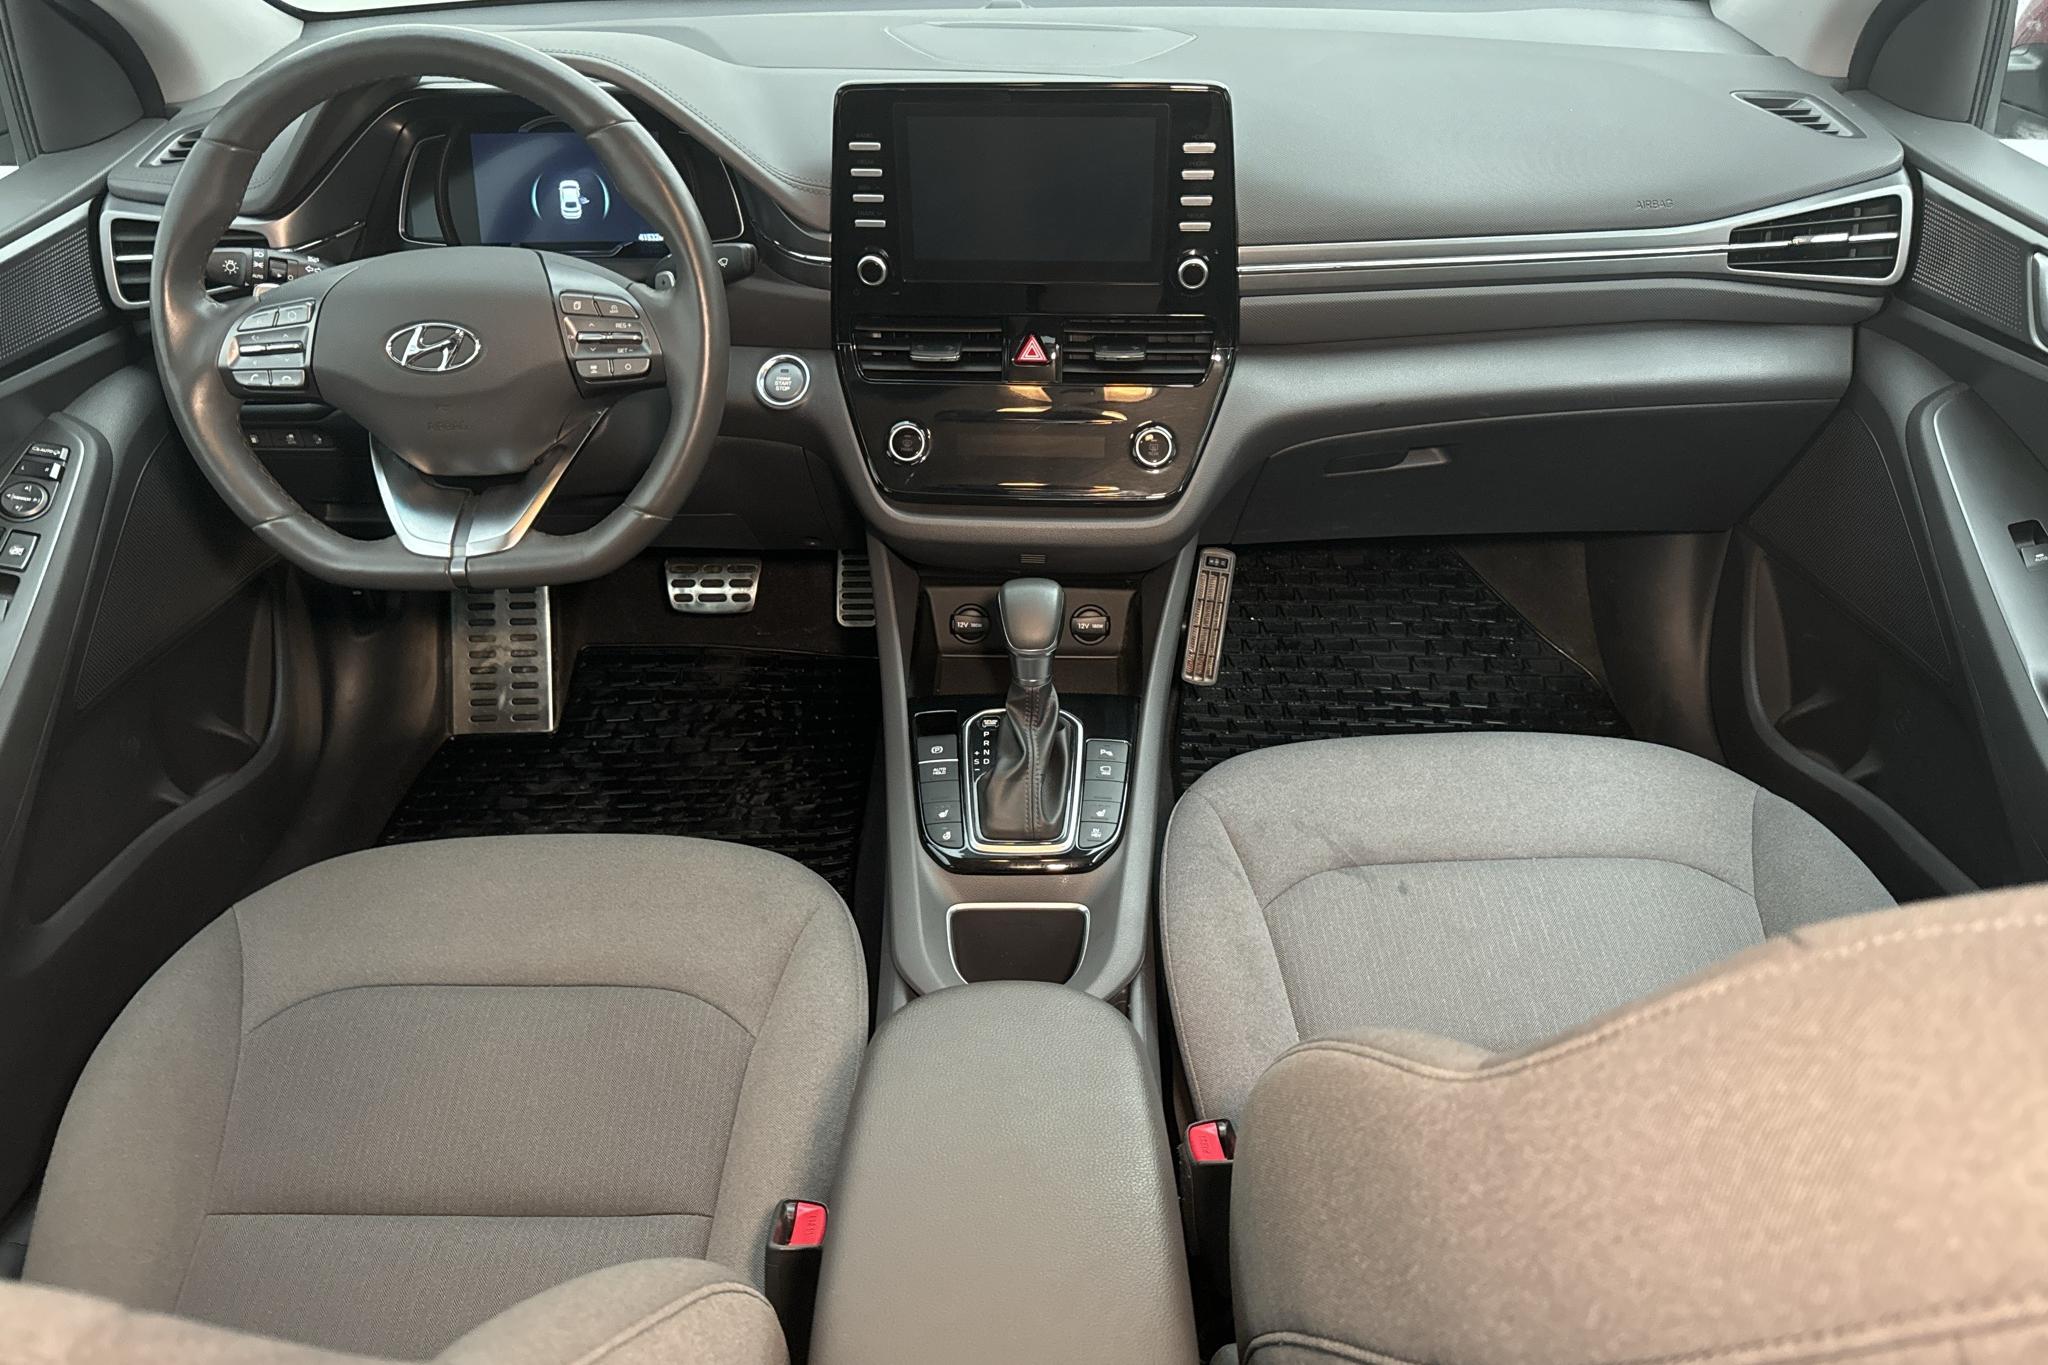 Hyundai IONIQ Plug-in (141hk) - 41 530 km - Automatyczna - czerwony - 2020